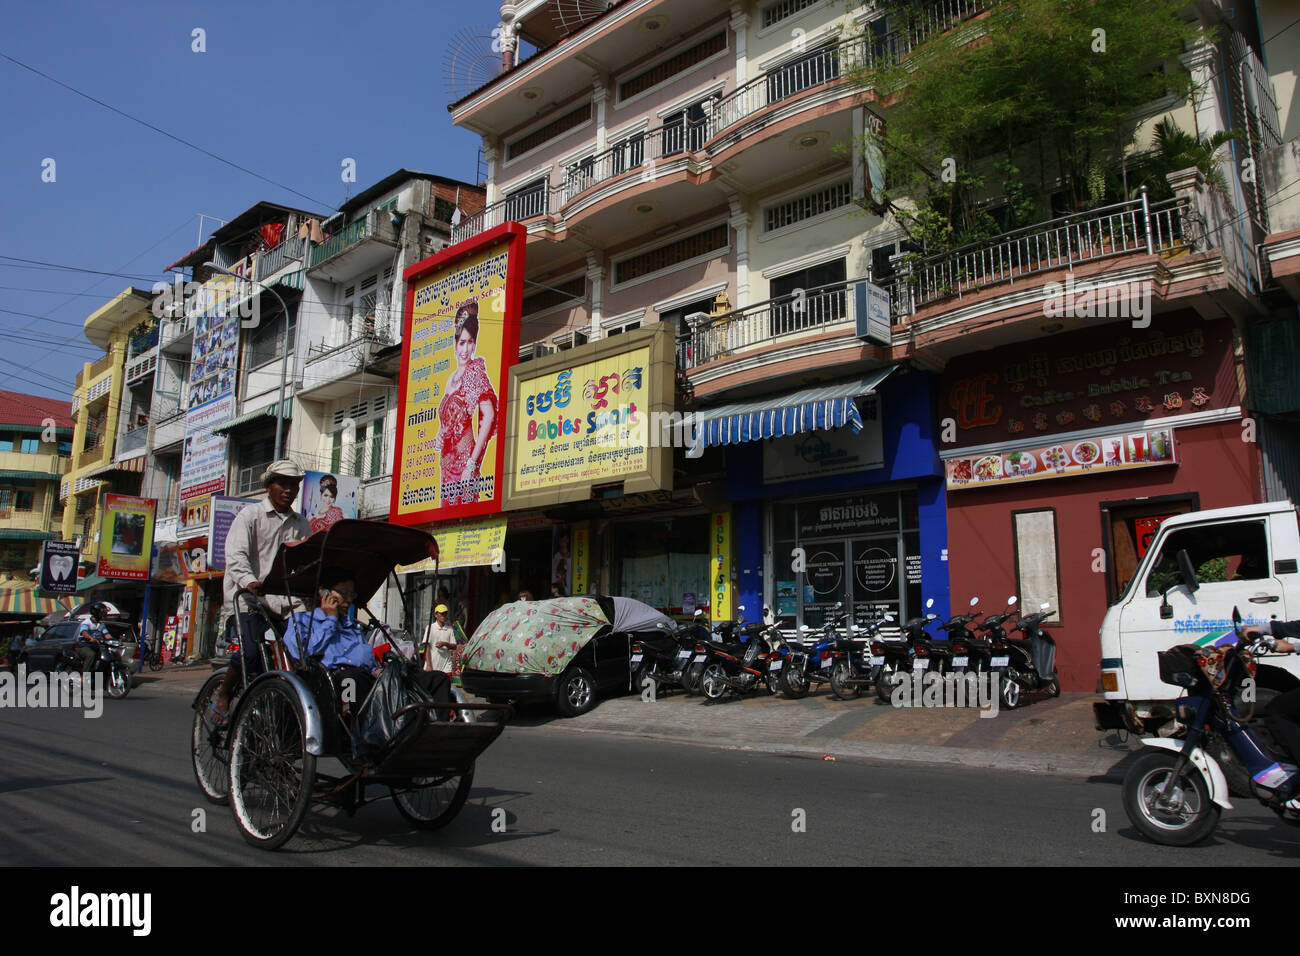 Street scene in Phnom Penh, Cambodia Stock Photo